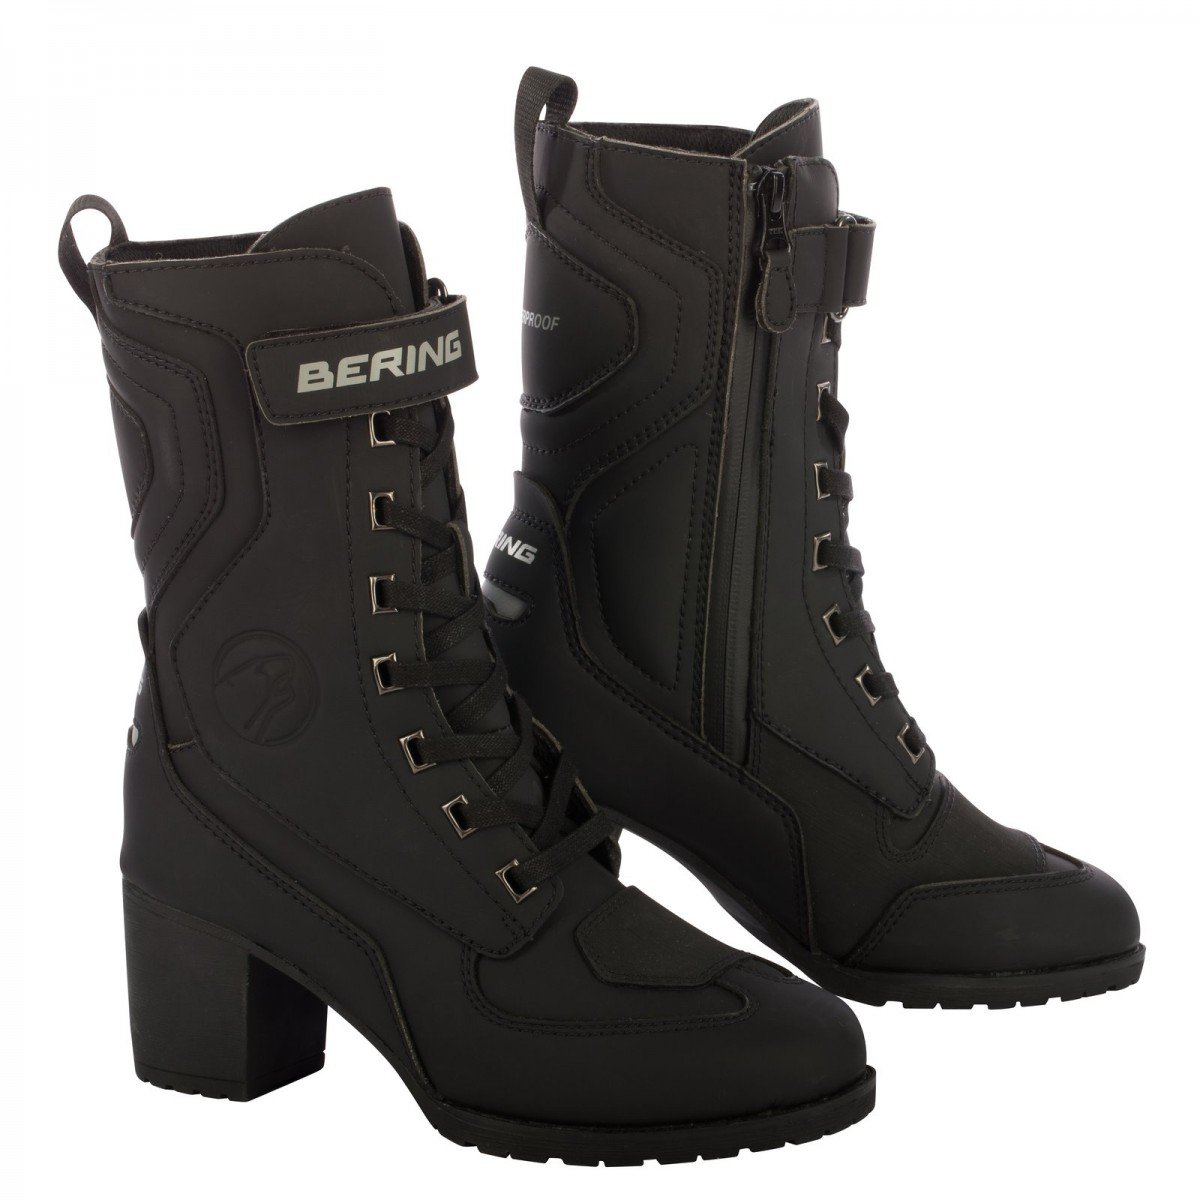 Image of Bering Lady Leonarda 2 Shoes Black Size 41 ID 3660815165317